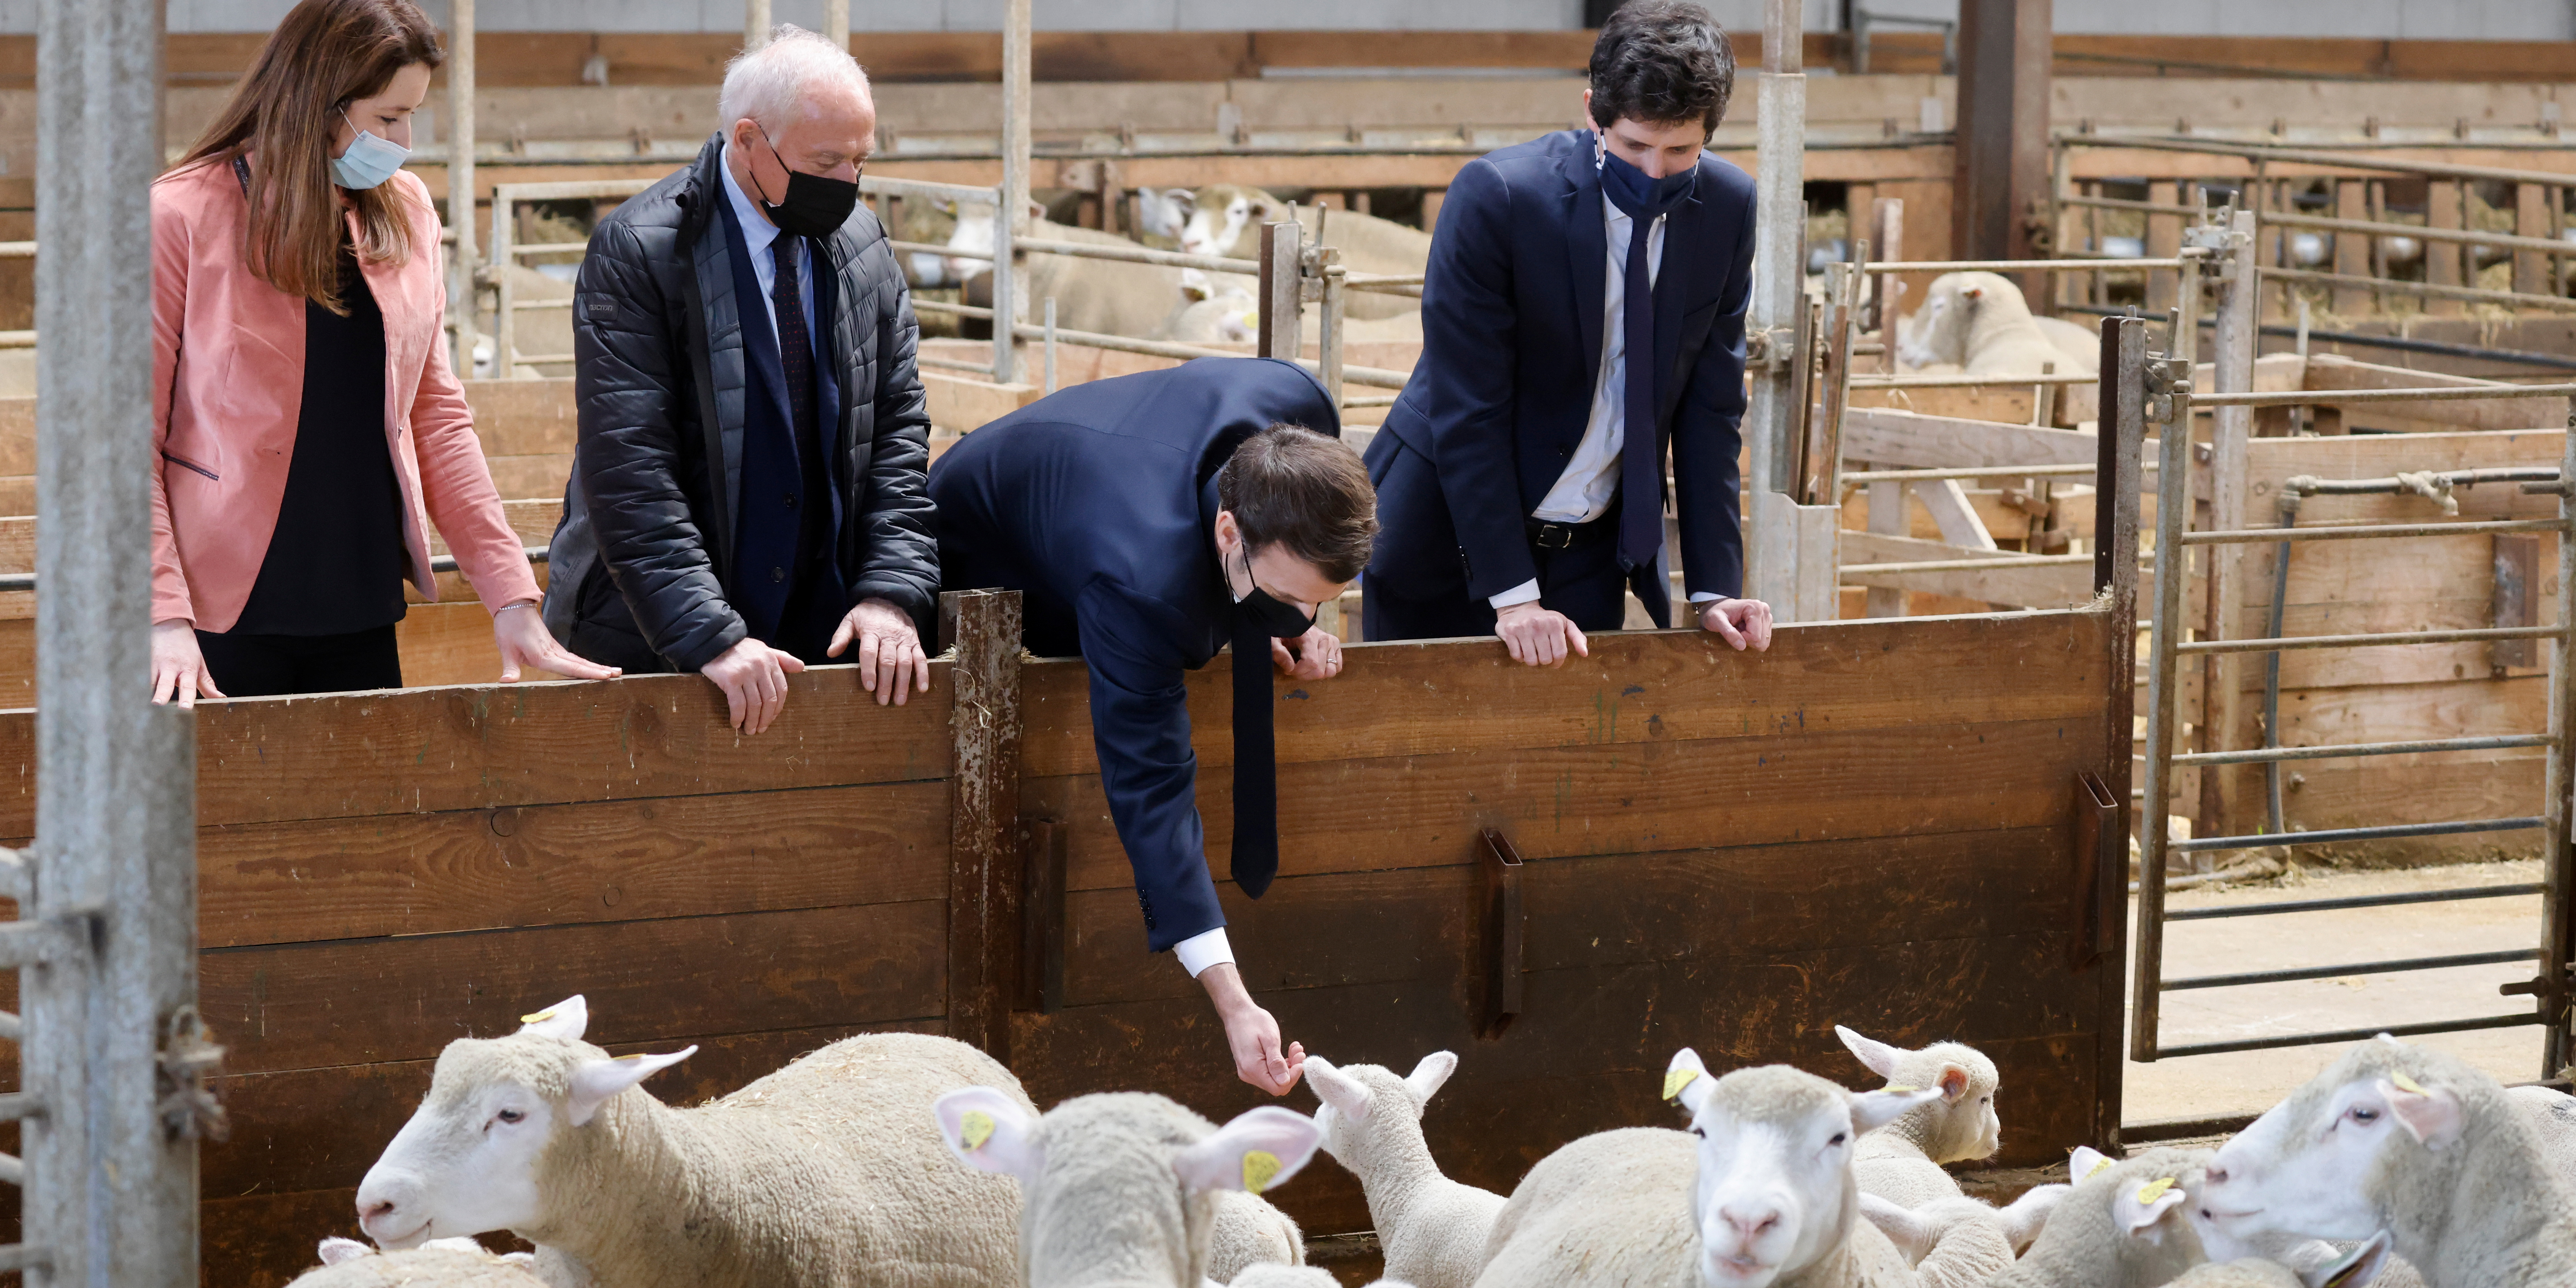 Privé de Salon de l'Agriculture, Macron tient tribune dans une ferme